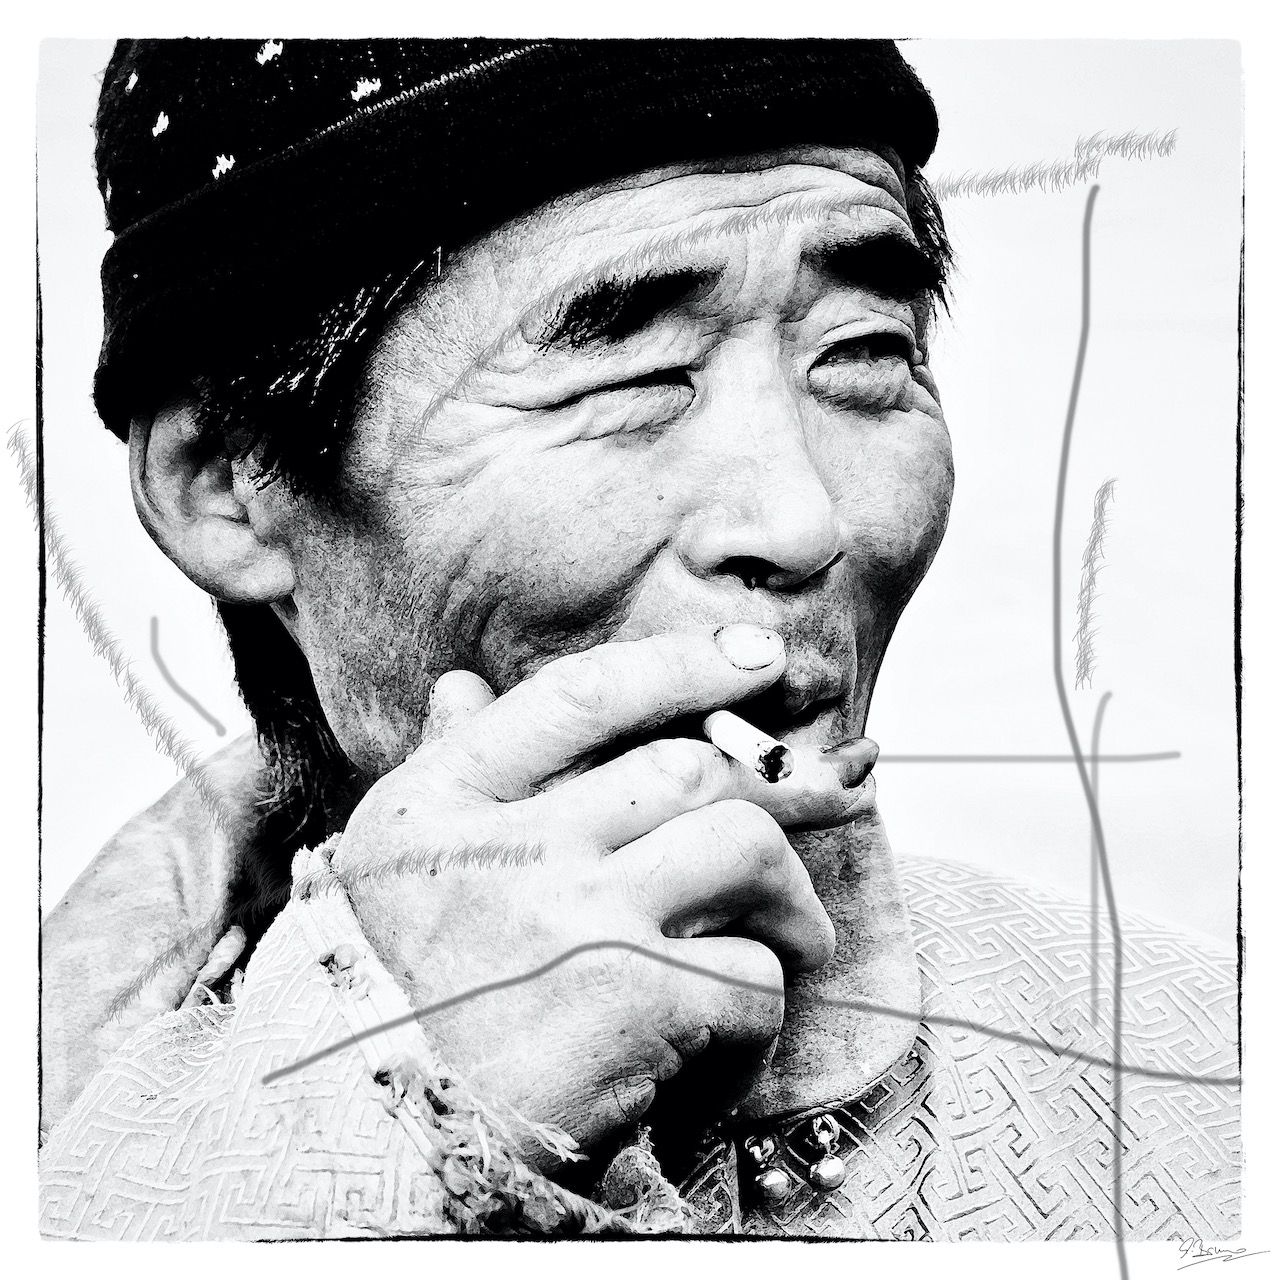 Ute Bruno pintura digital blanco y negro retrato hombre asiático con cigarrillo y gorra